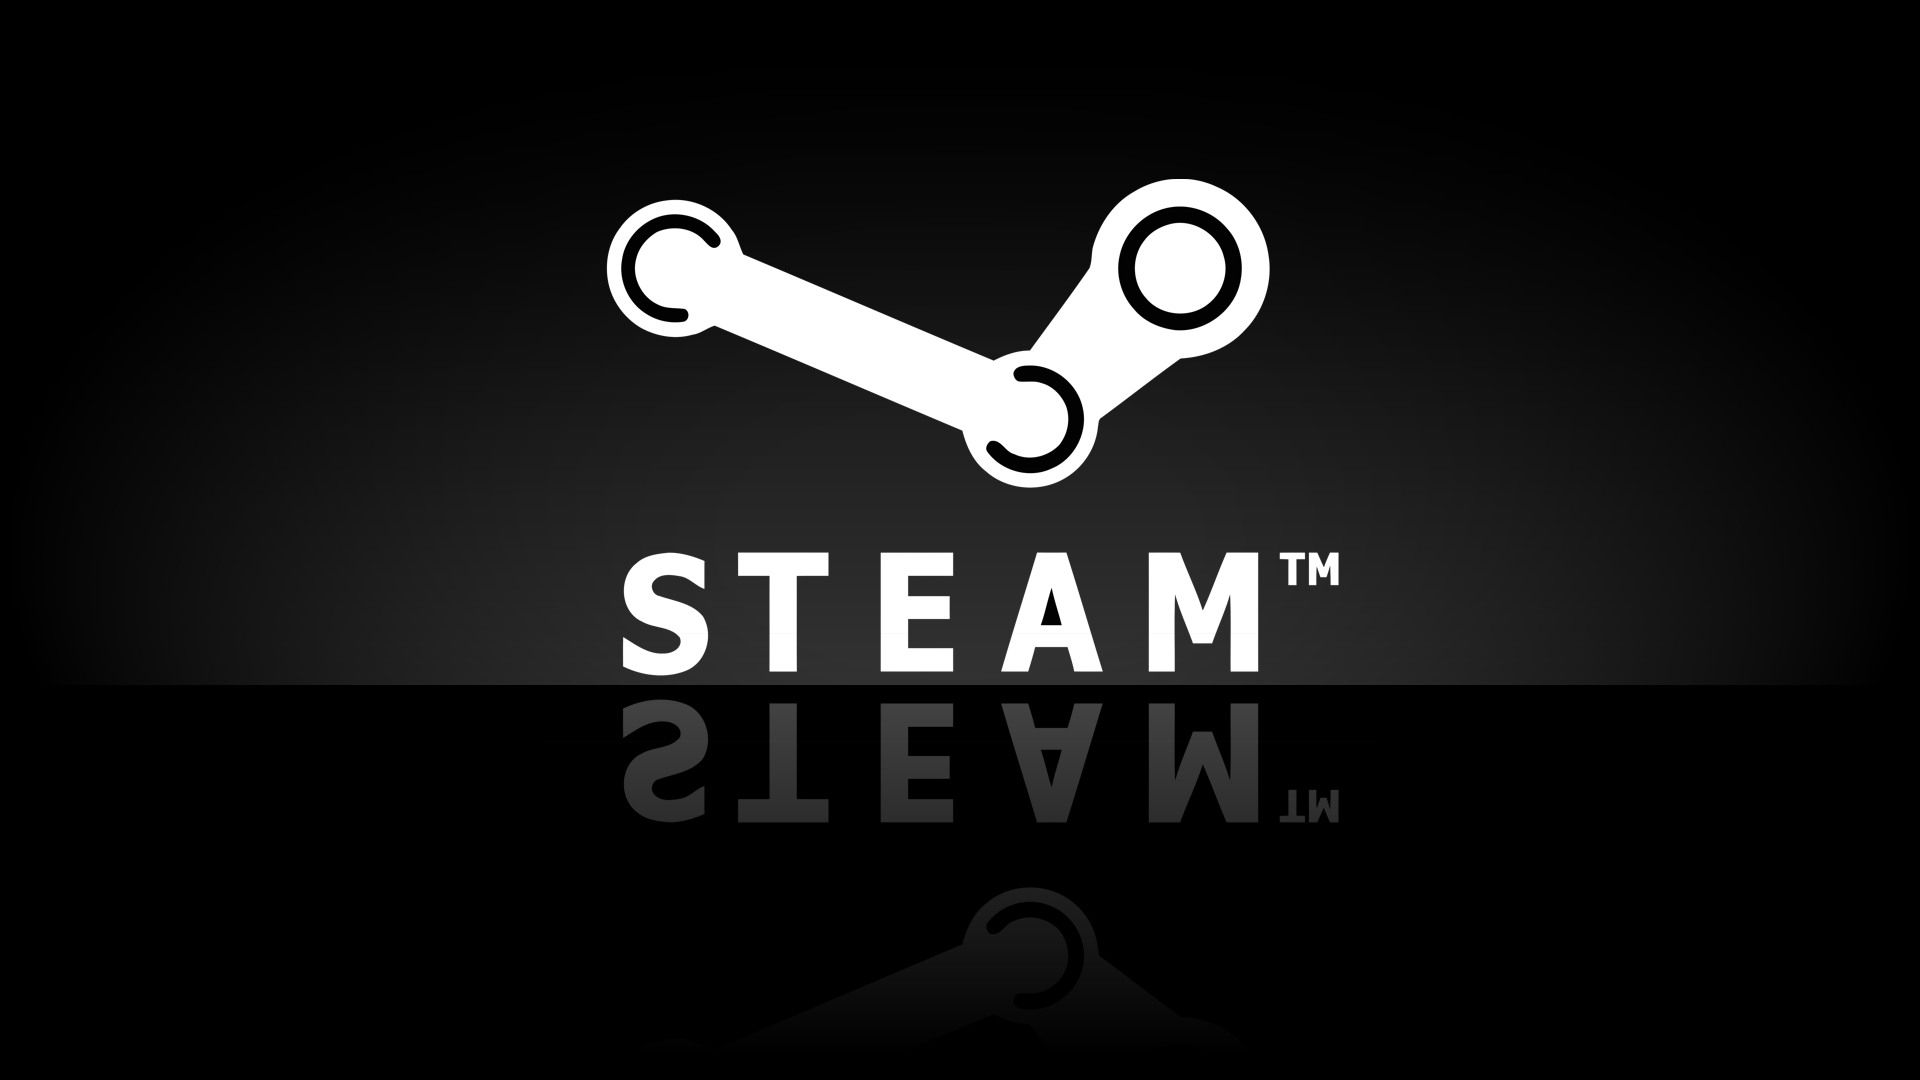 Steam връща пари ако сте играли играта по-малко от 2 часа и сте я върнали до 14 дена след покупката